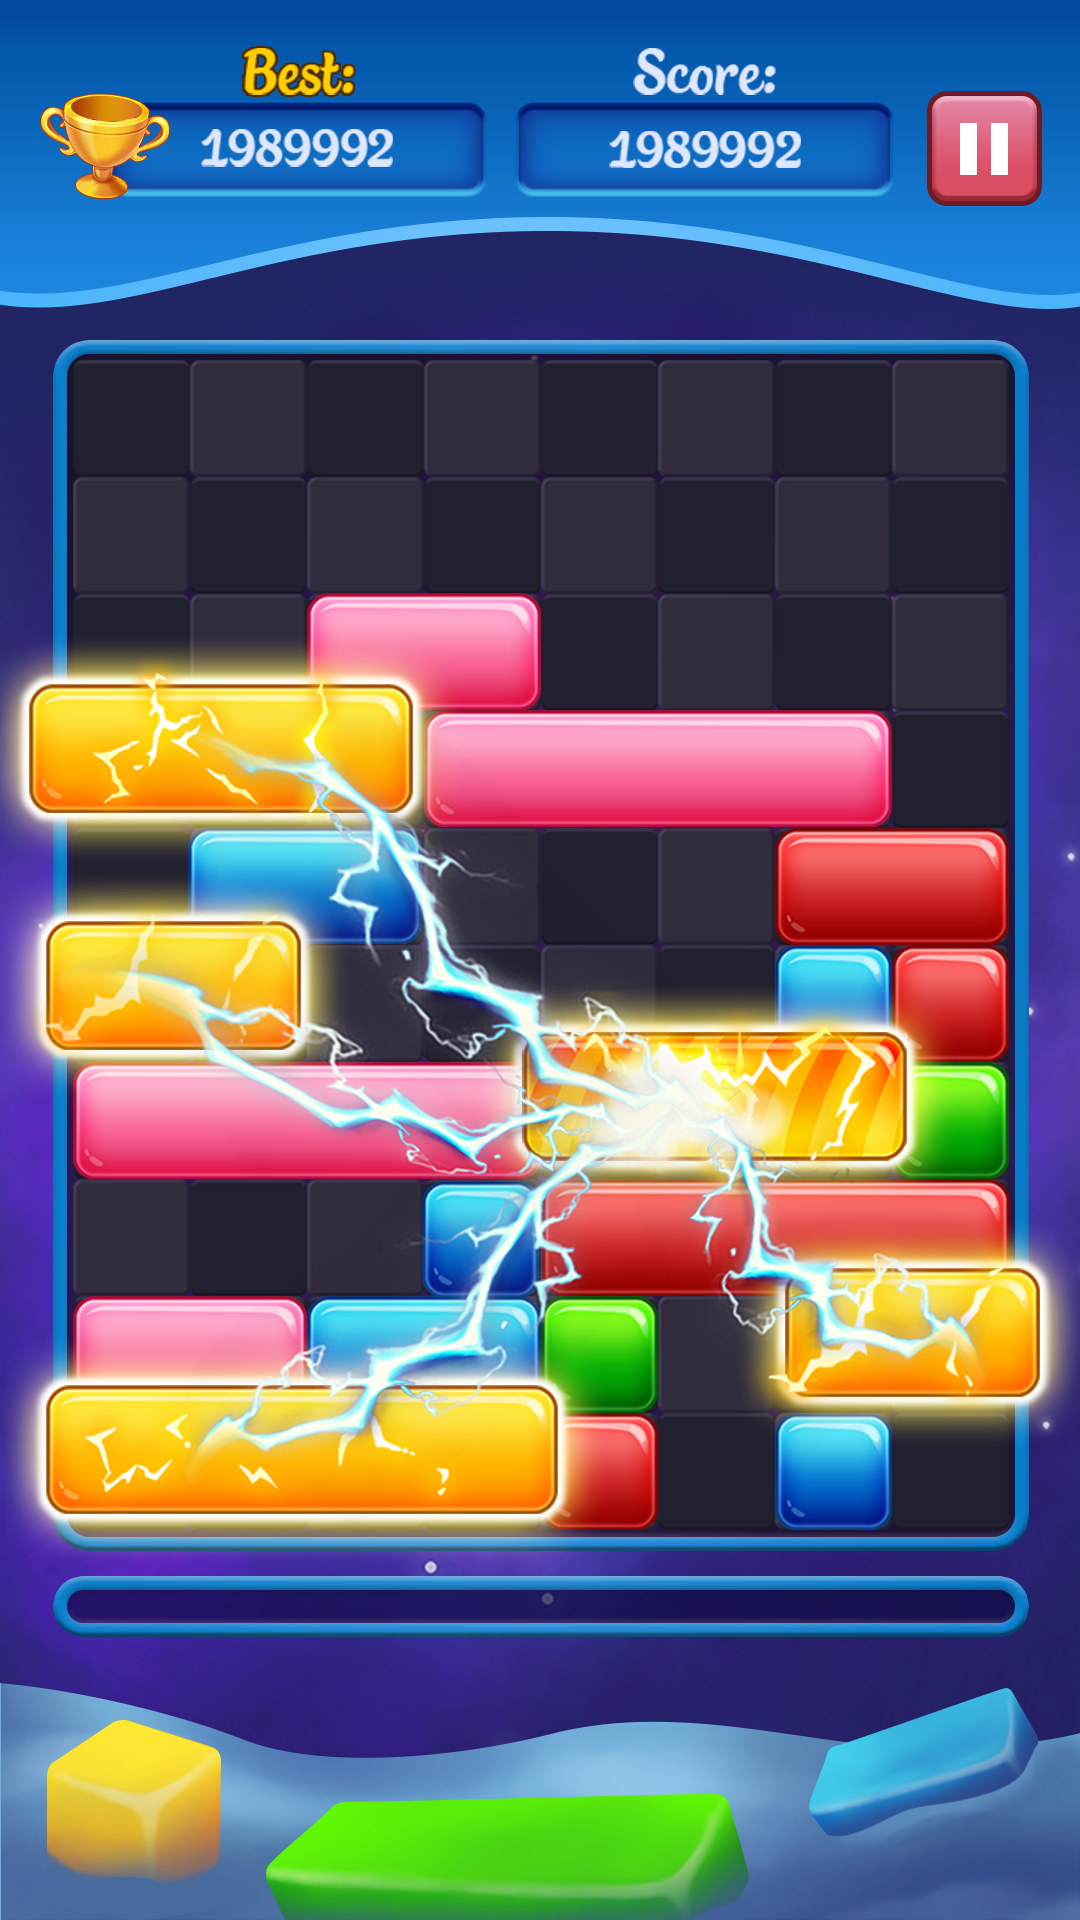 Tetris Offline Block Puzzle Game APK voor Android Download